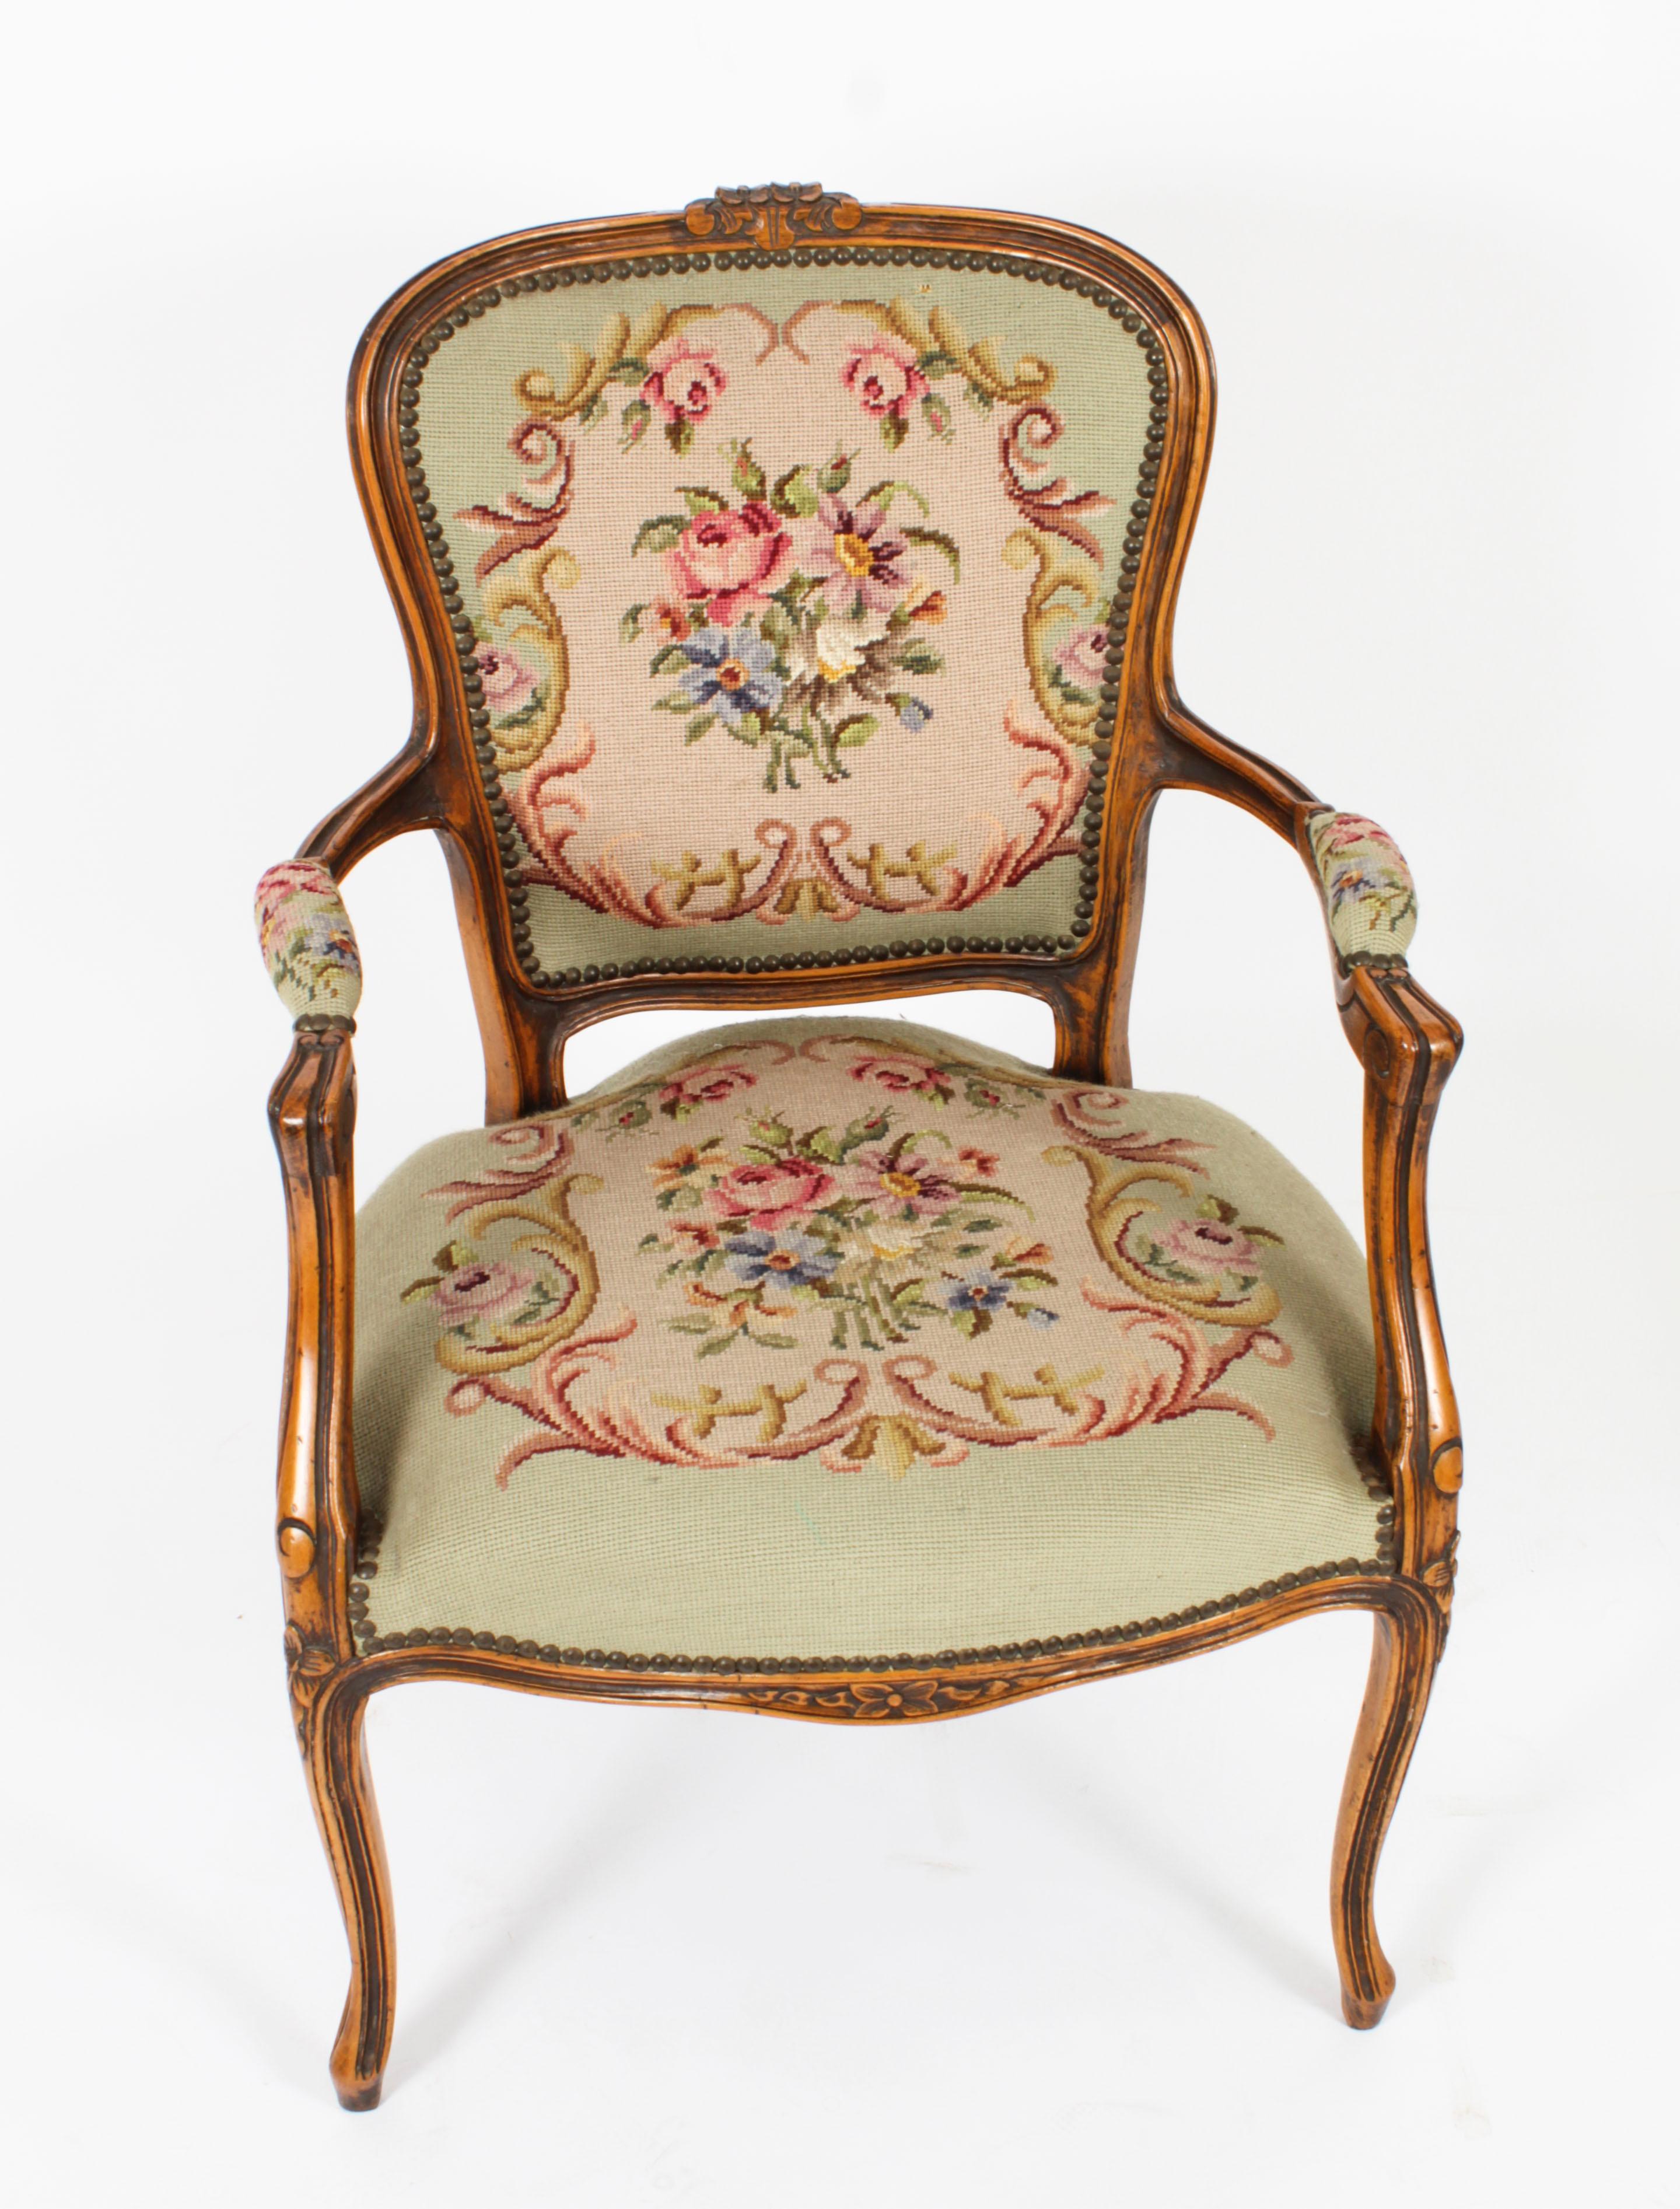 Dies ist eine fantastische Vintage Paar Französisch Louis Revival Nussbaum Sessel,  aus der Mitte des 20. Jahrhunderts.
 
Jeder Stuhl hat eine ovale, gepolsterte Rückenlehne, einen gepolsterten Sitz und gepolsterte Armlehnen, die auf Cabriole-Beinen